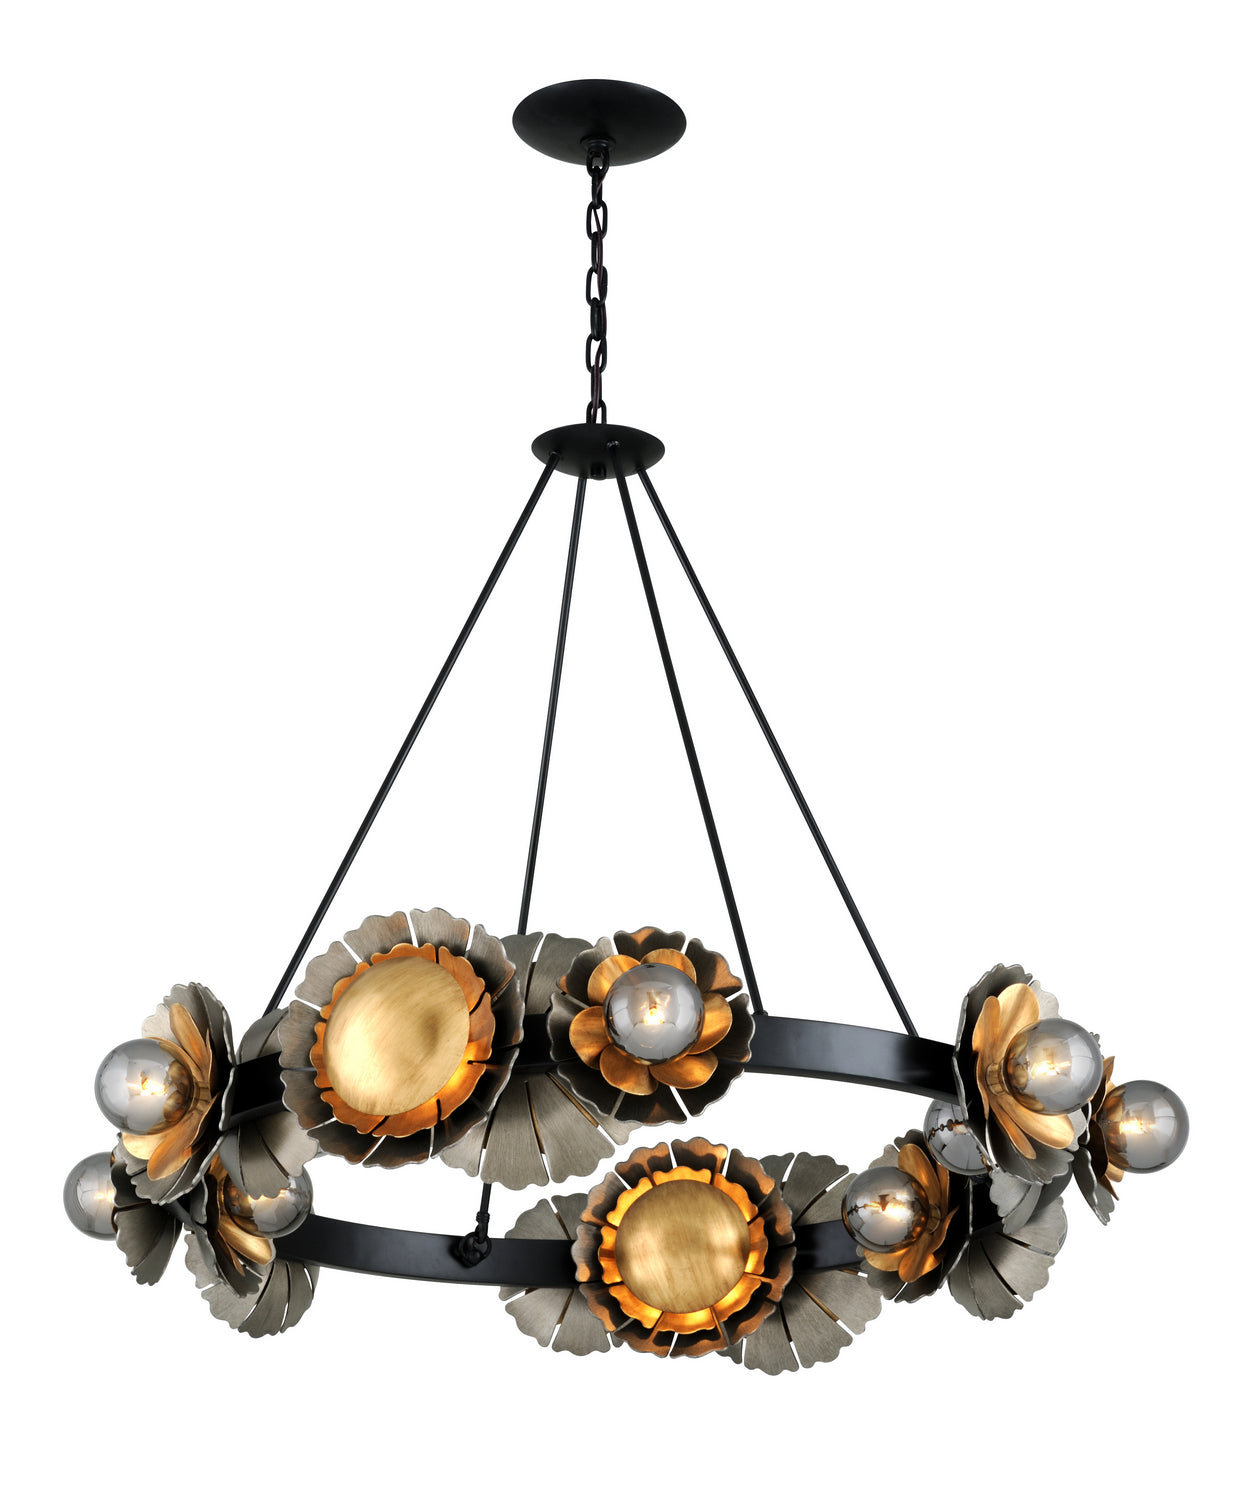 Corbett Lighting - 16 Light Chandelier - Magic Garden - Black Graphite Bronze Leaf- Union Lighting Luminaires Decor